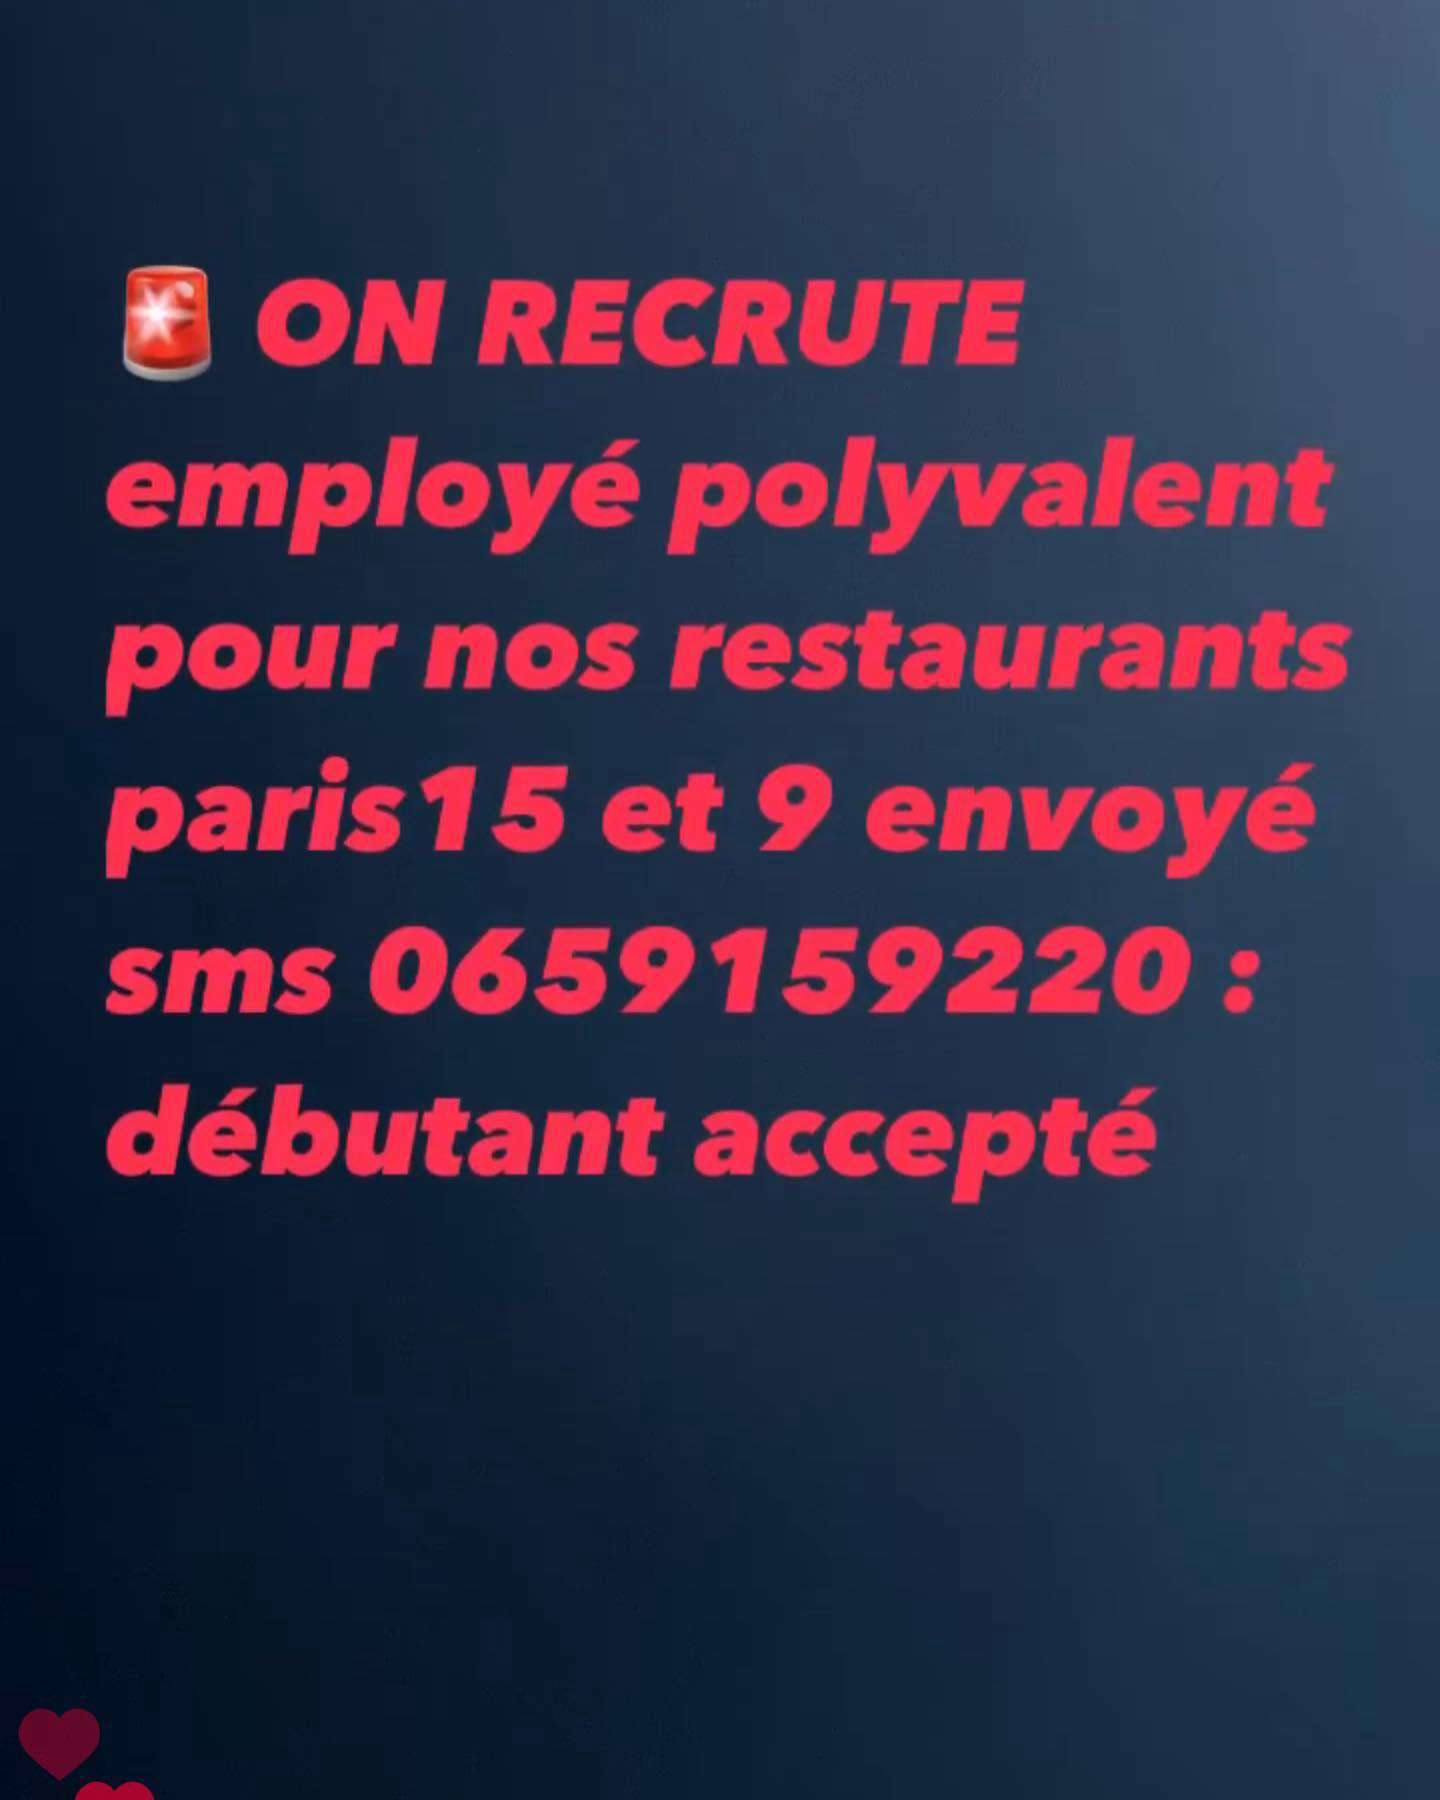 On recrute des employés polyvalents pour nos 2 restaurants paris 15 et paris 9